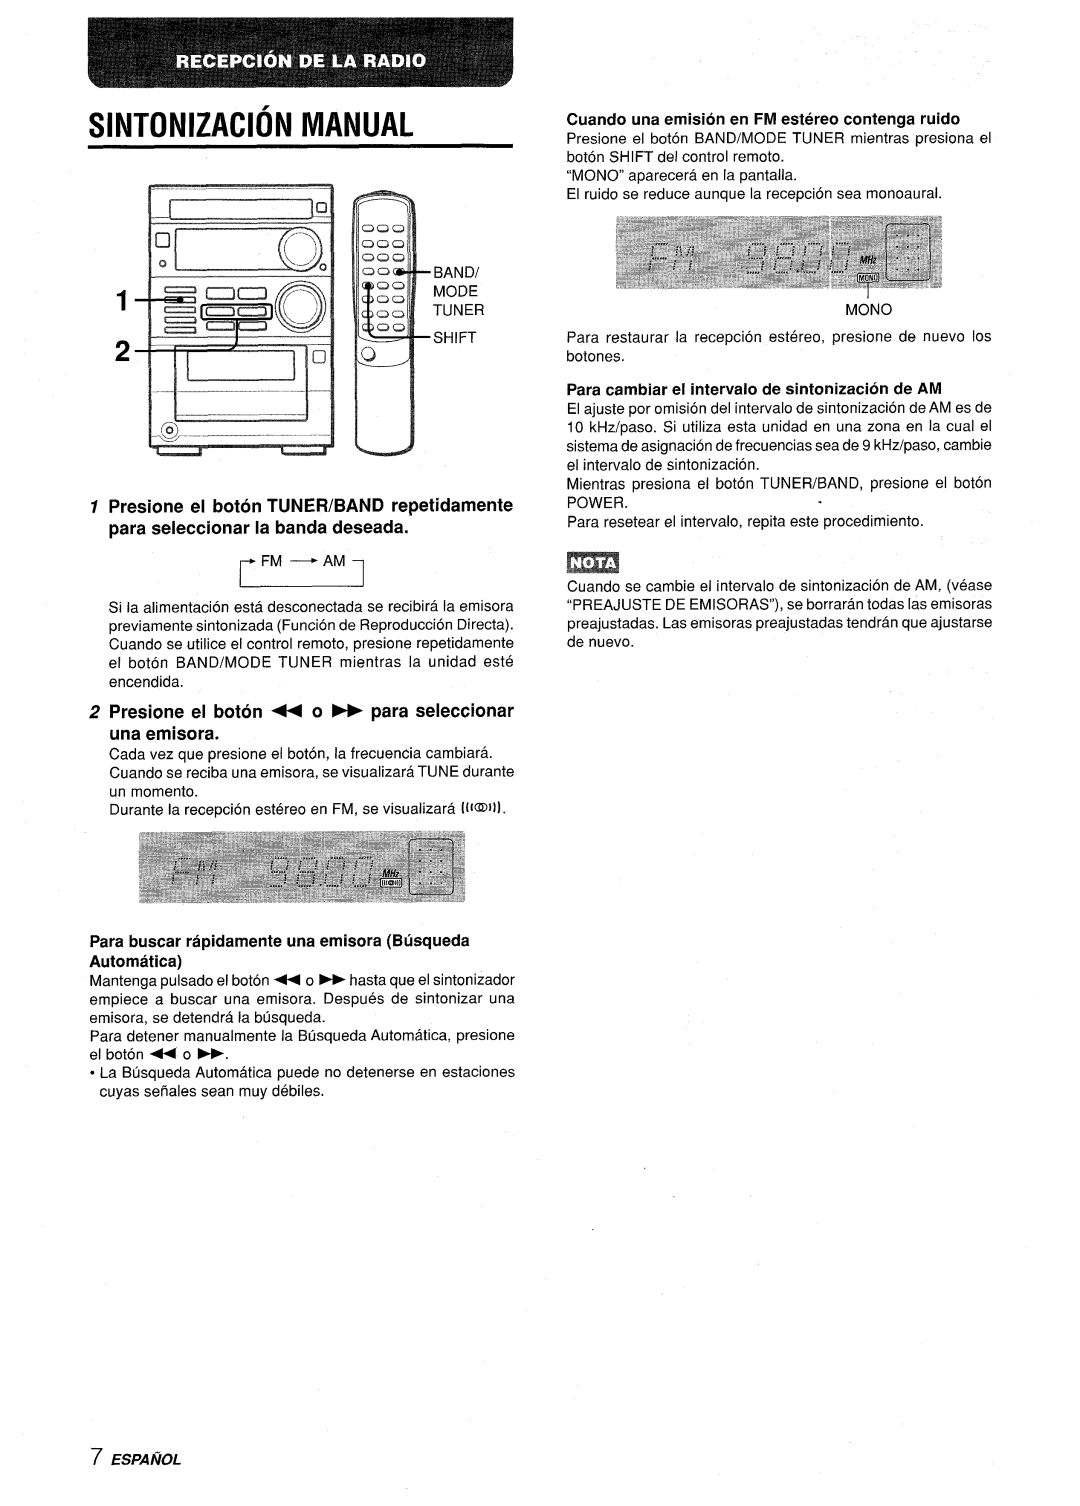 Aiwa XR-M35 manual Sintonizacion Manual, Presione el boton ++ 0- para seleccionar una emisora, Espanol 